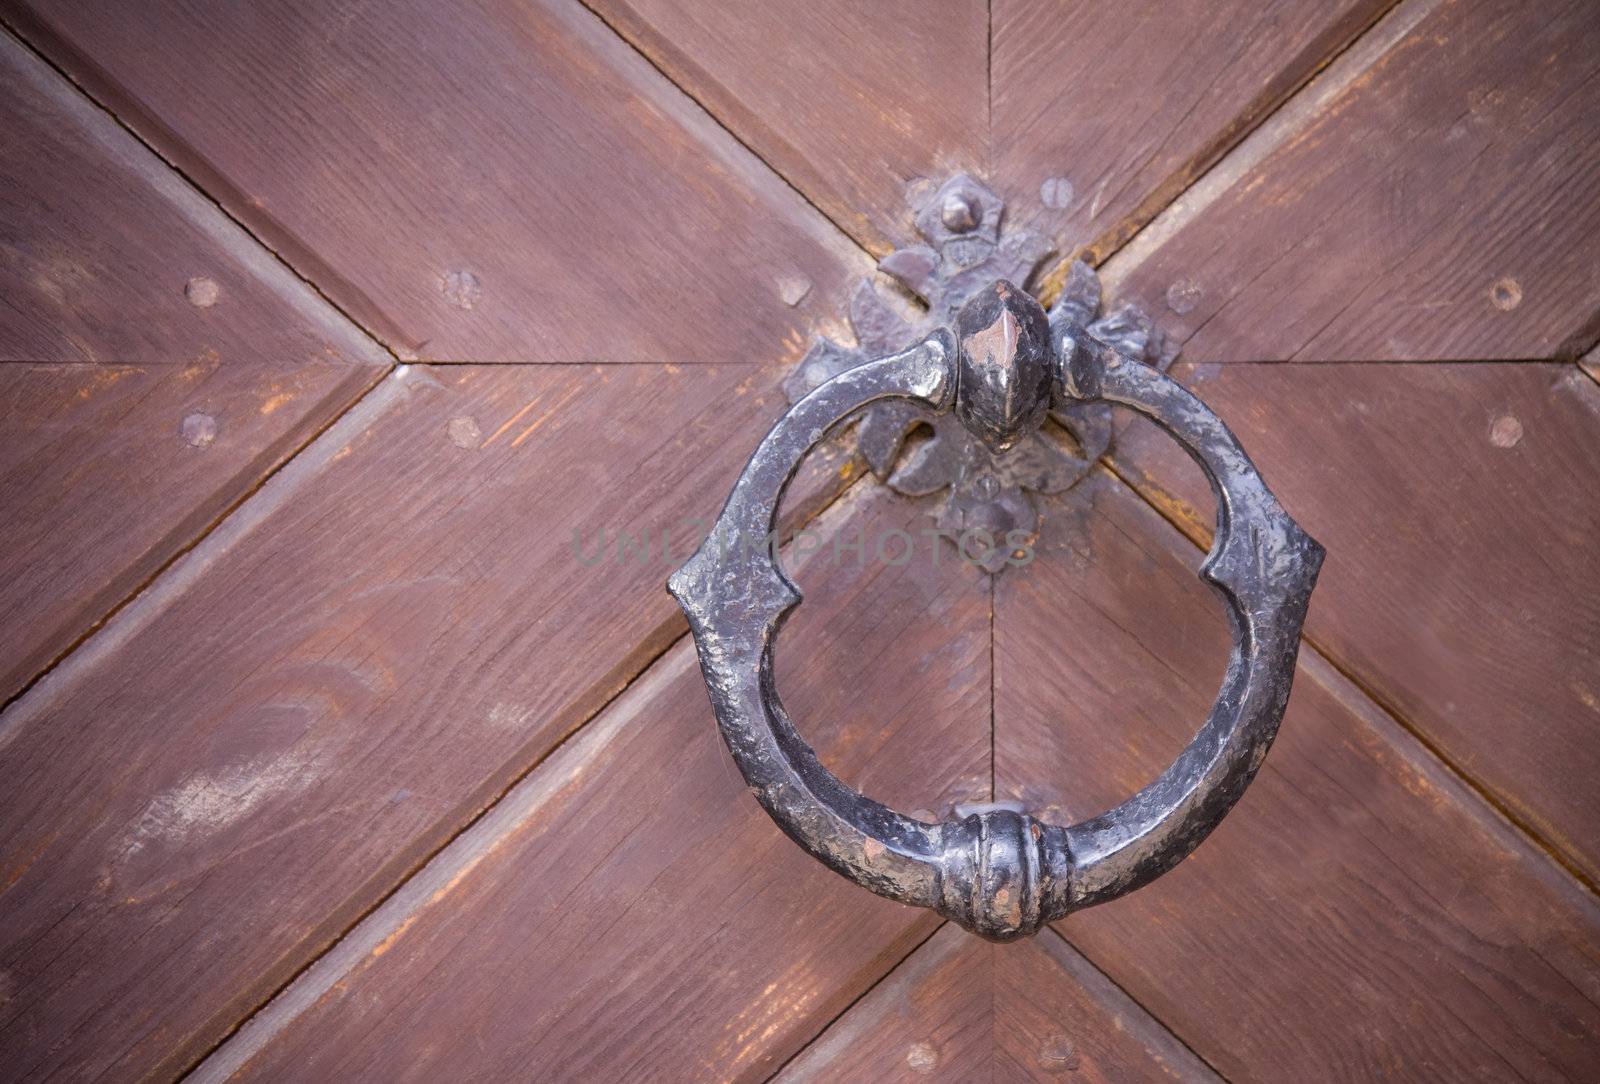 Steel medieval knocker on the old wooden door